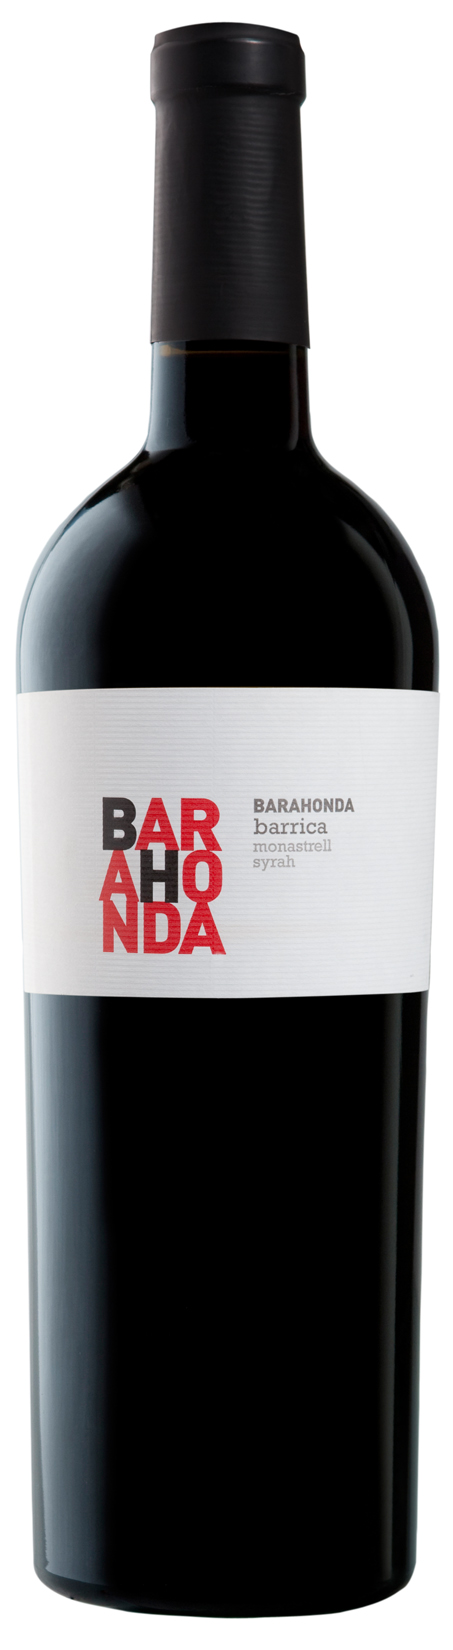 Bild von der Weinflasche Barahonda Barrica